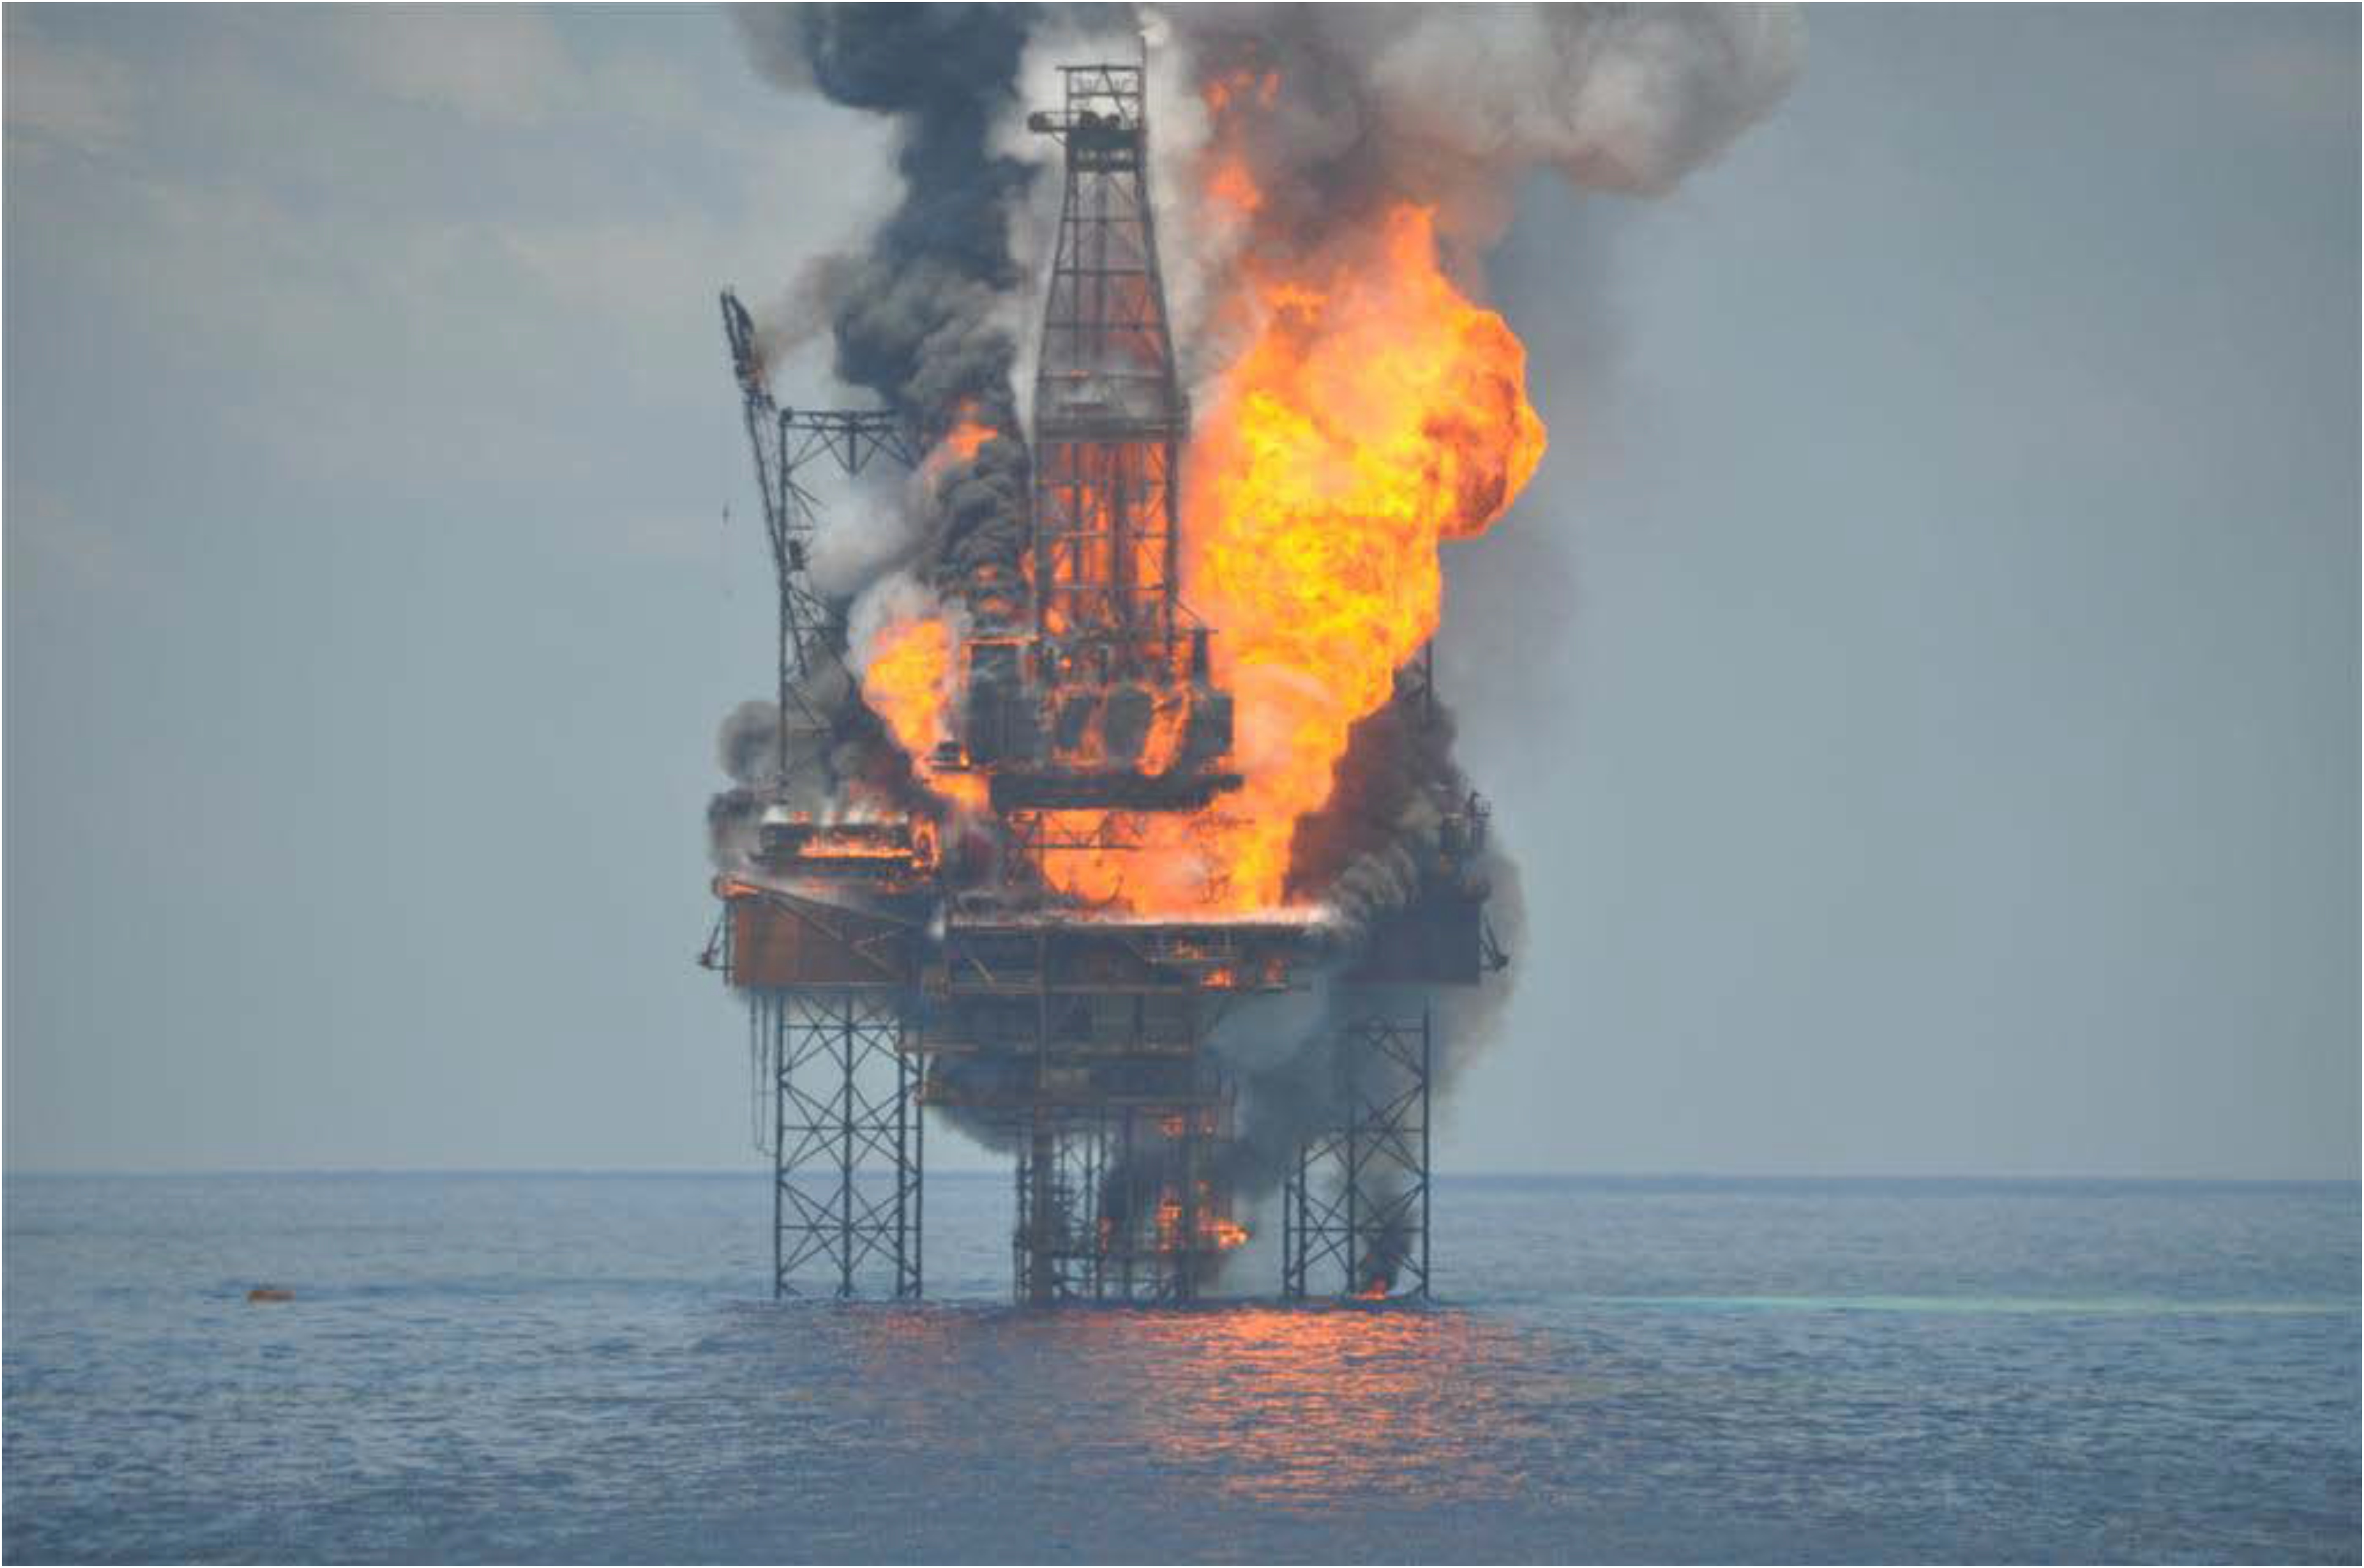 30 апреля 2010. Взрыв на нефтяной платформе в мексиканском заливе 2010. Взрыв нефтяной платформы Deepwater Horizon 2010. Взрыв в мексиканском заливе 2010. Взрыв нефтяной платформы Deepwater Horizon - 20 апреля 2010 года.